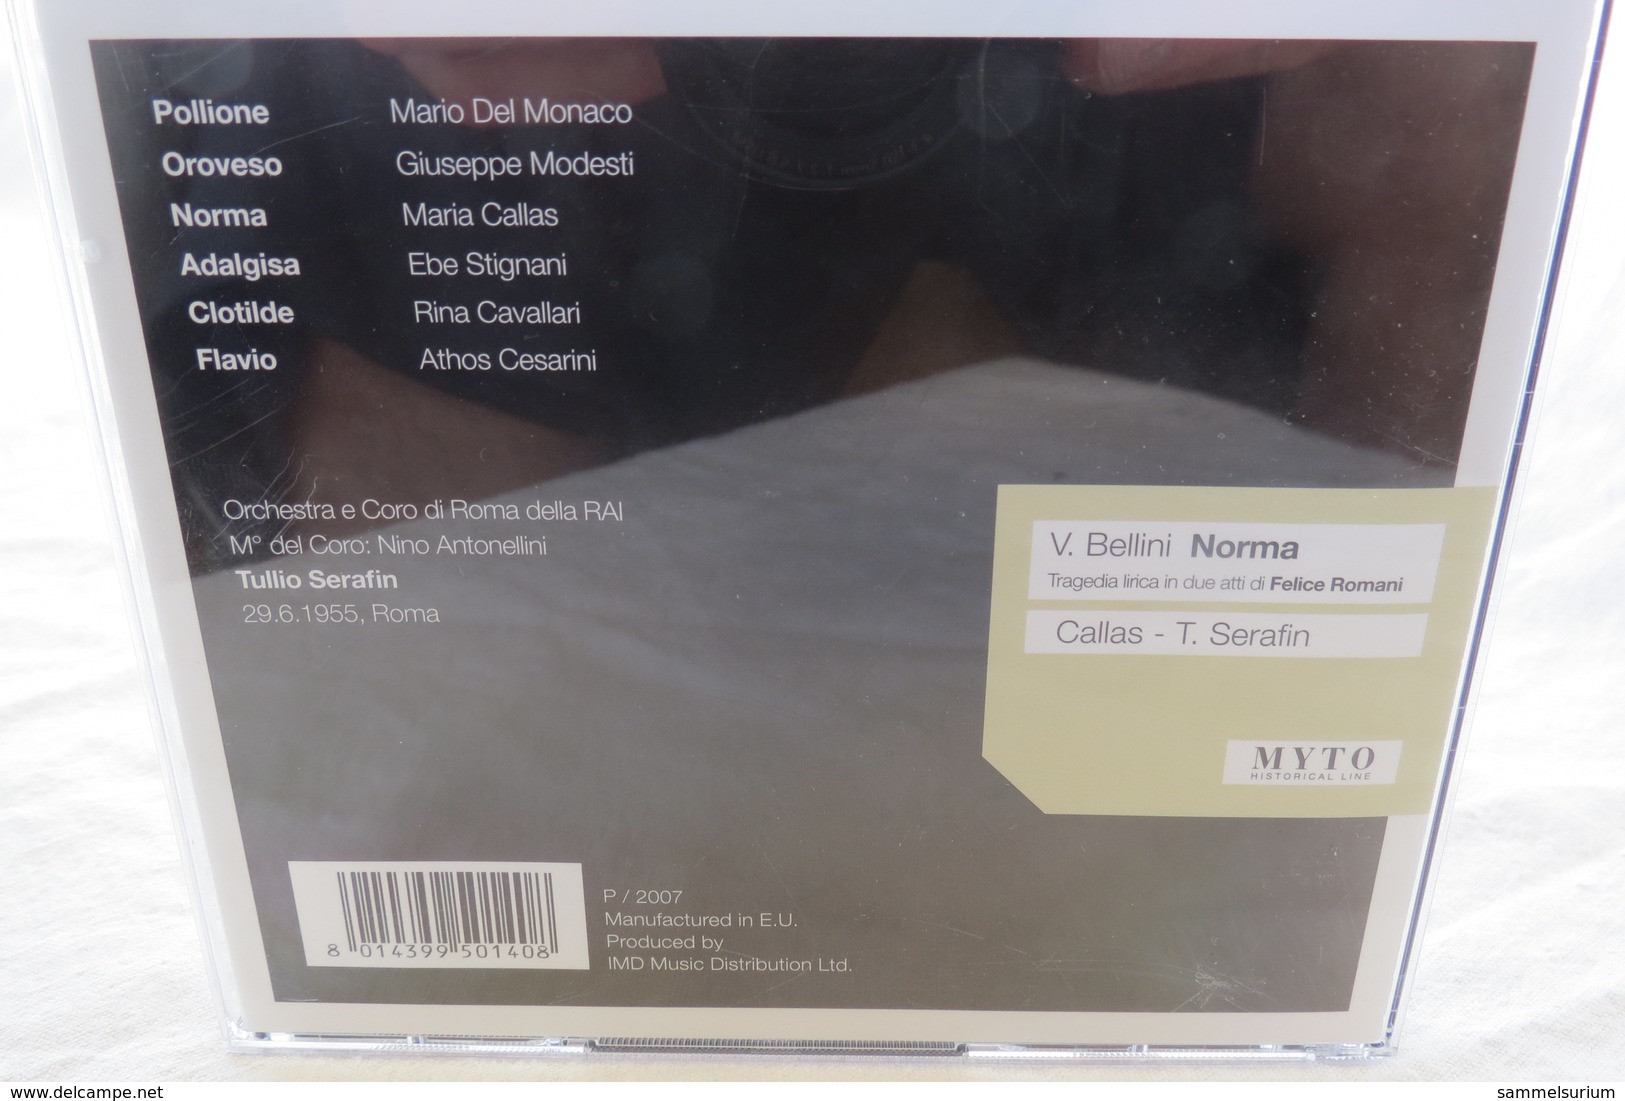 2 CDs "Vincenzo Bellini - Norma" M. Callas, Tullio Serafin - Opera